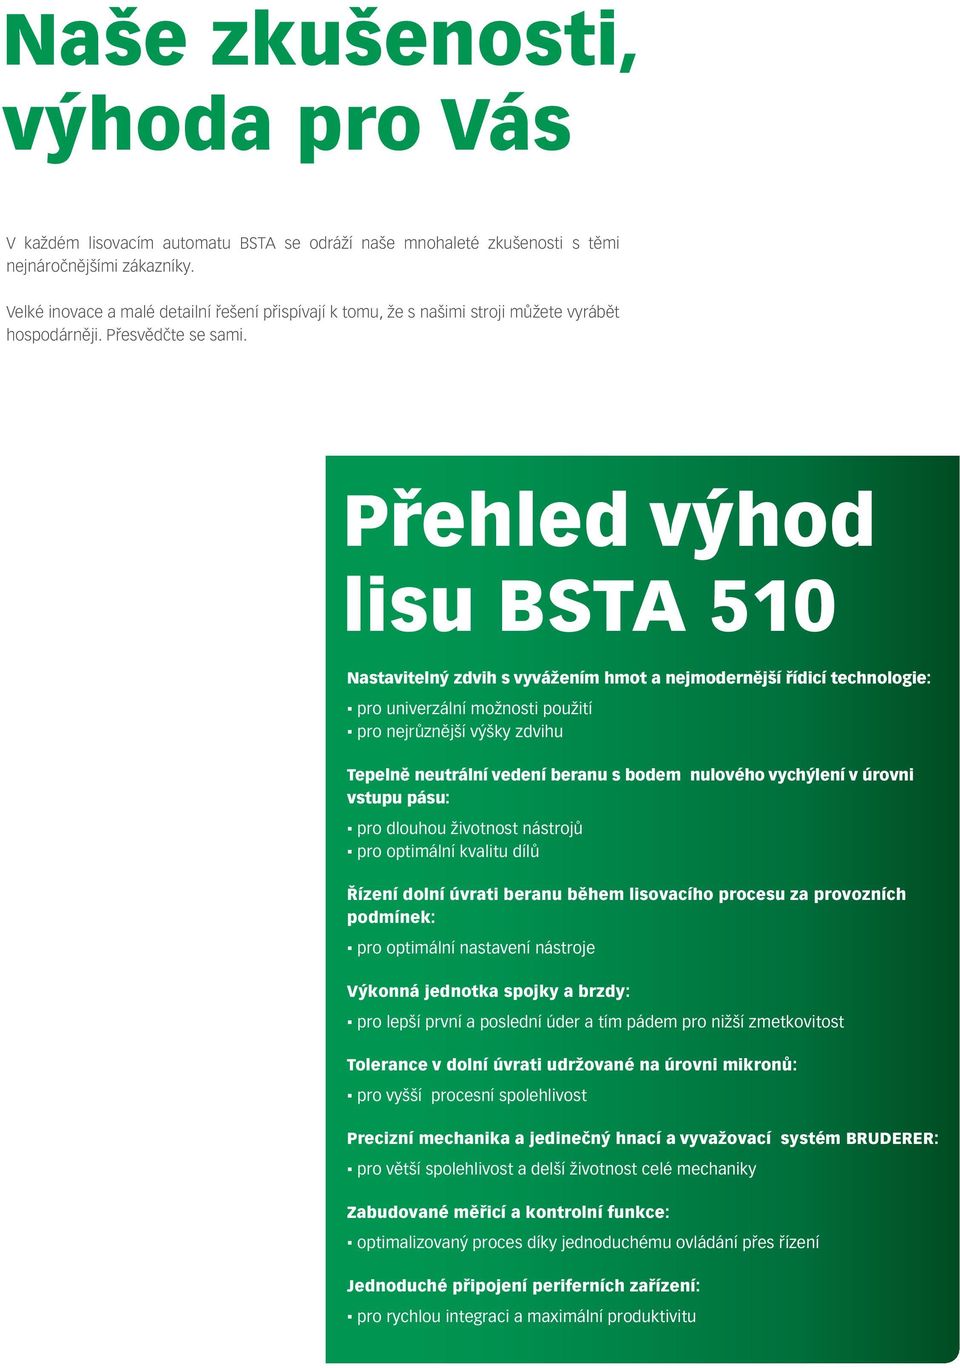 Přehled výhod lisu BSTA 510 Nastavitelný zdvih s vyvážením hmot a nejmodernější řídicí technologie: pro univerzální možnosti použití pro nejrůznější výšky zdvihu Tepelně neutrální vedení beranu s